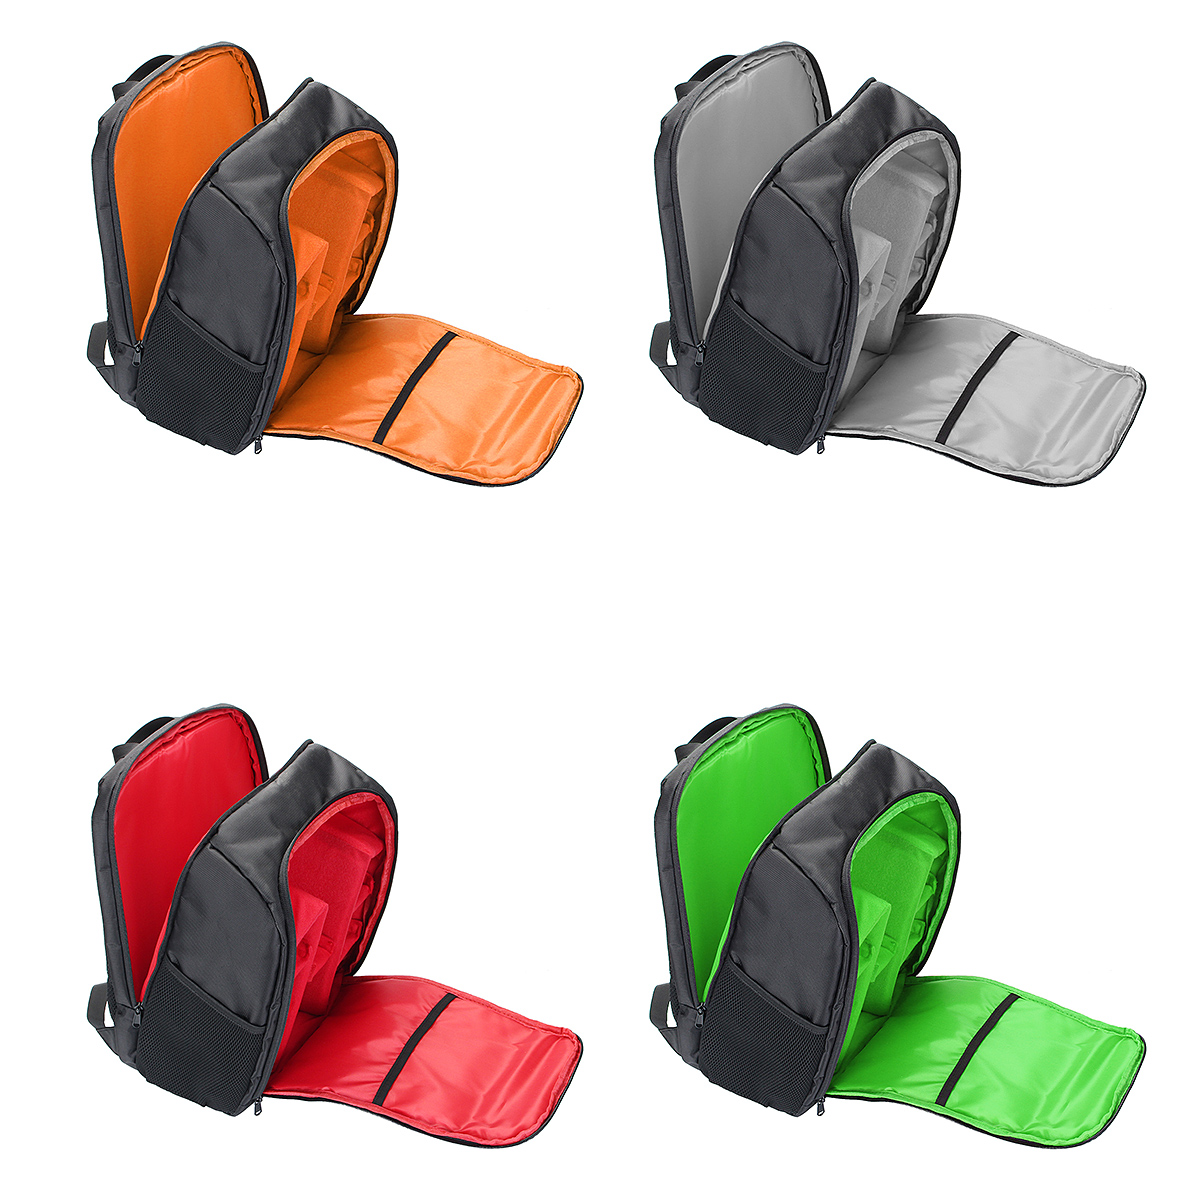 Waterproof-Backpack-Shoulder-Bag-Laptop-Case-For-DSLR-Camera-Lens-Accessories-1401643-1